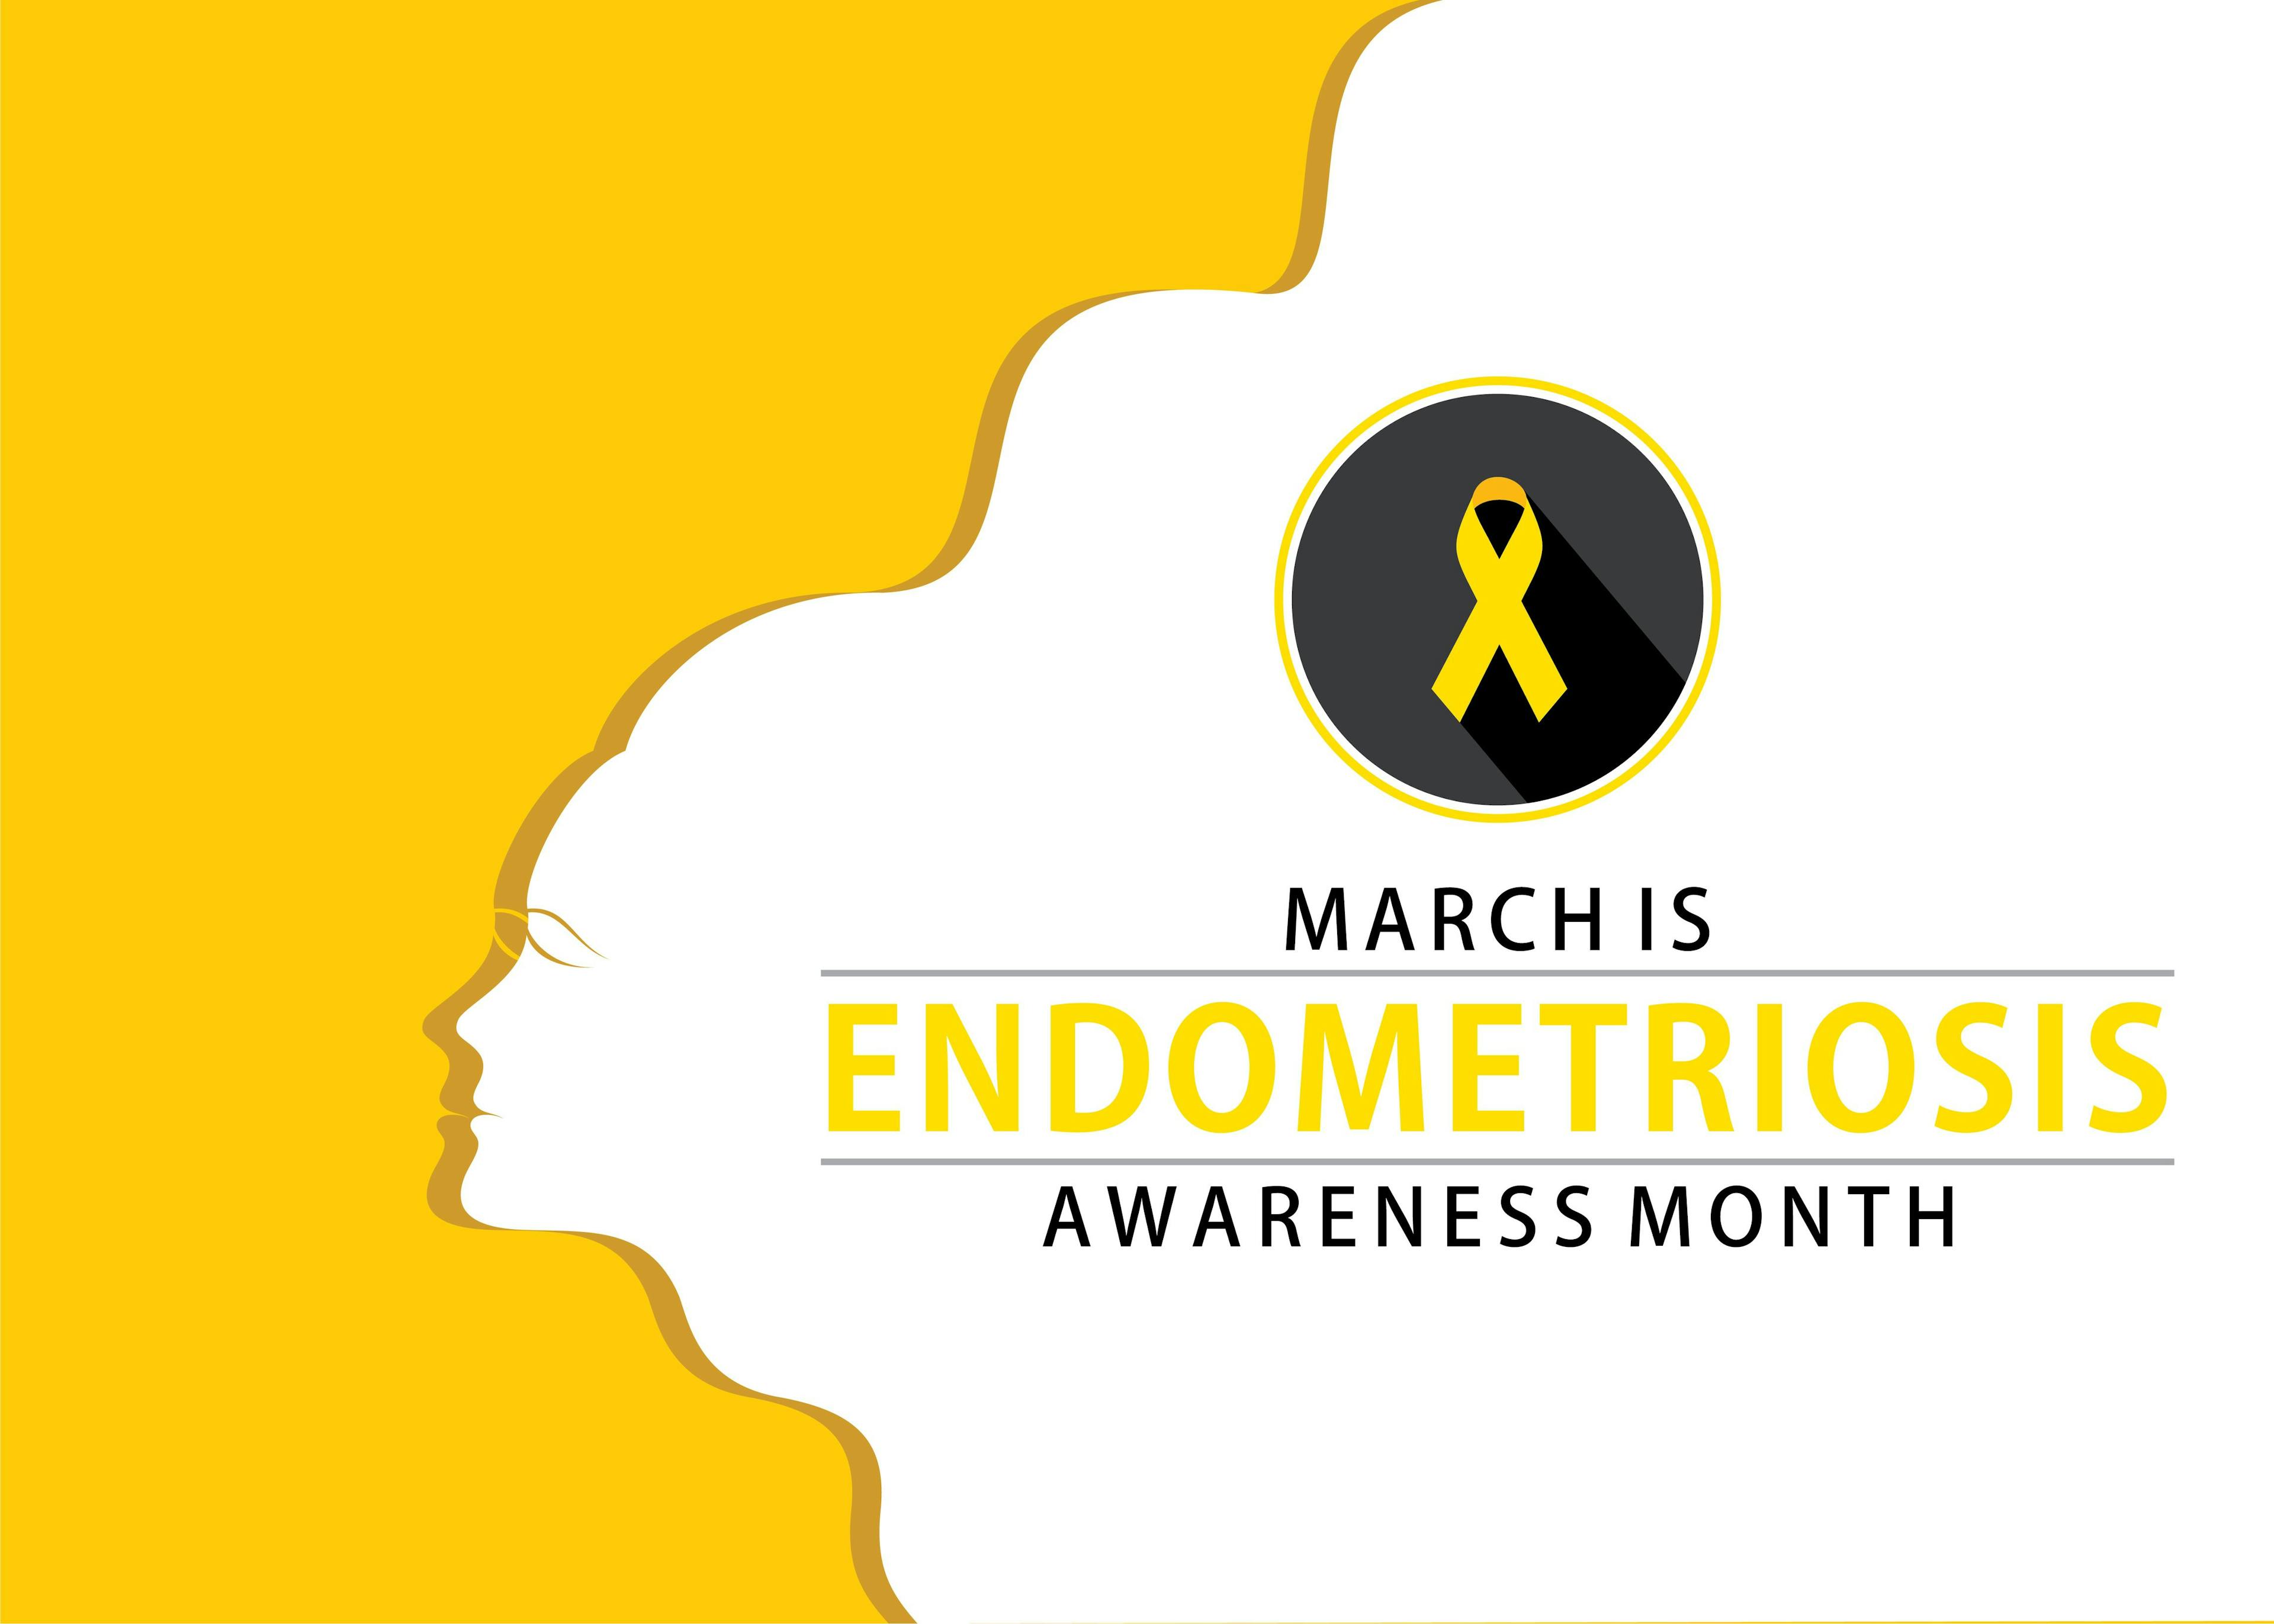 Bringing awareness to endometriosis